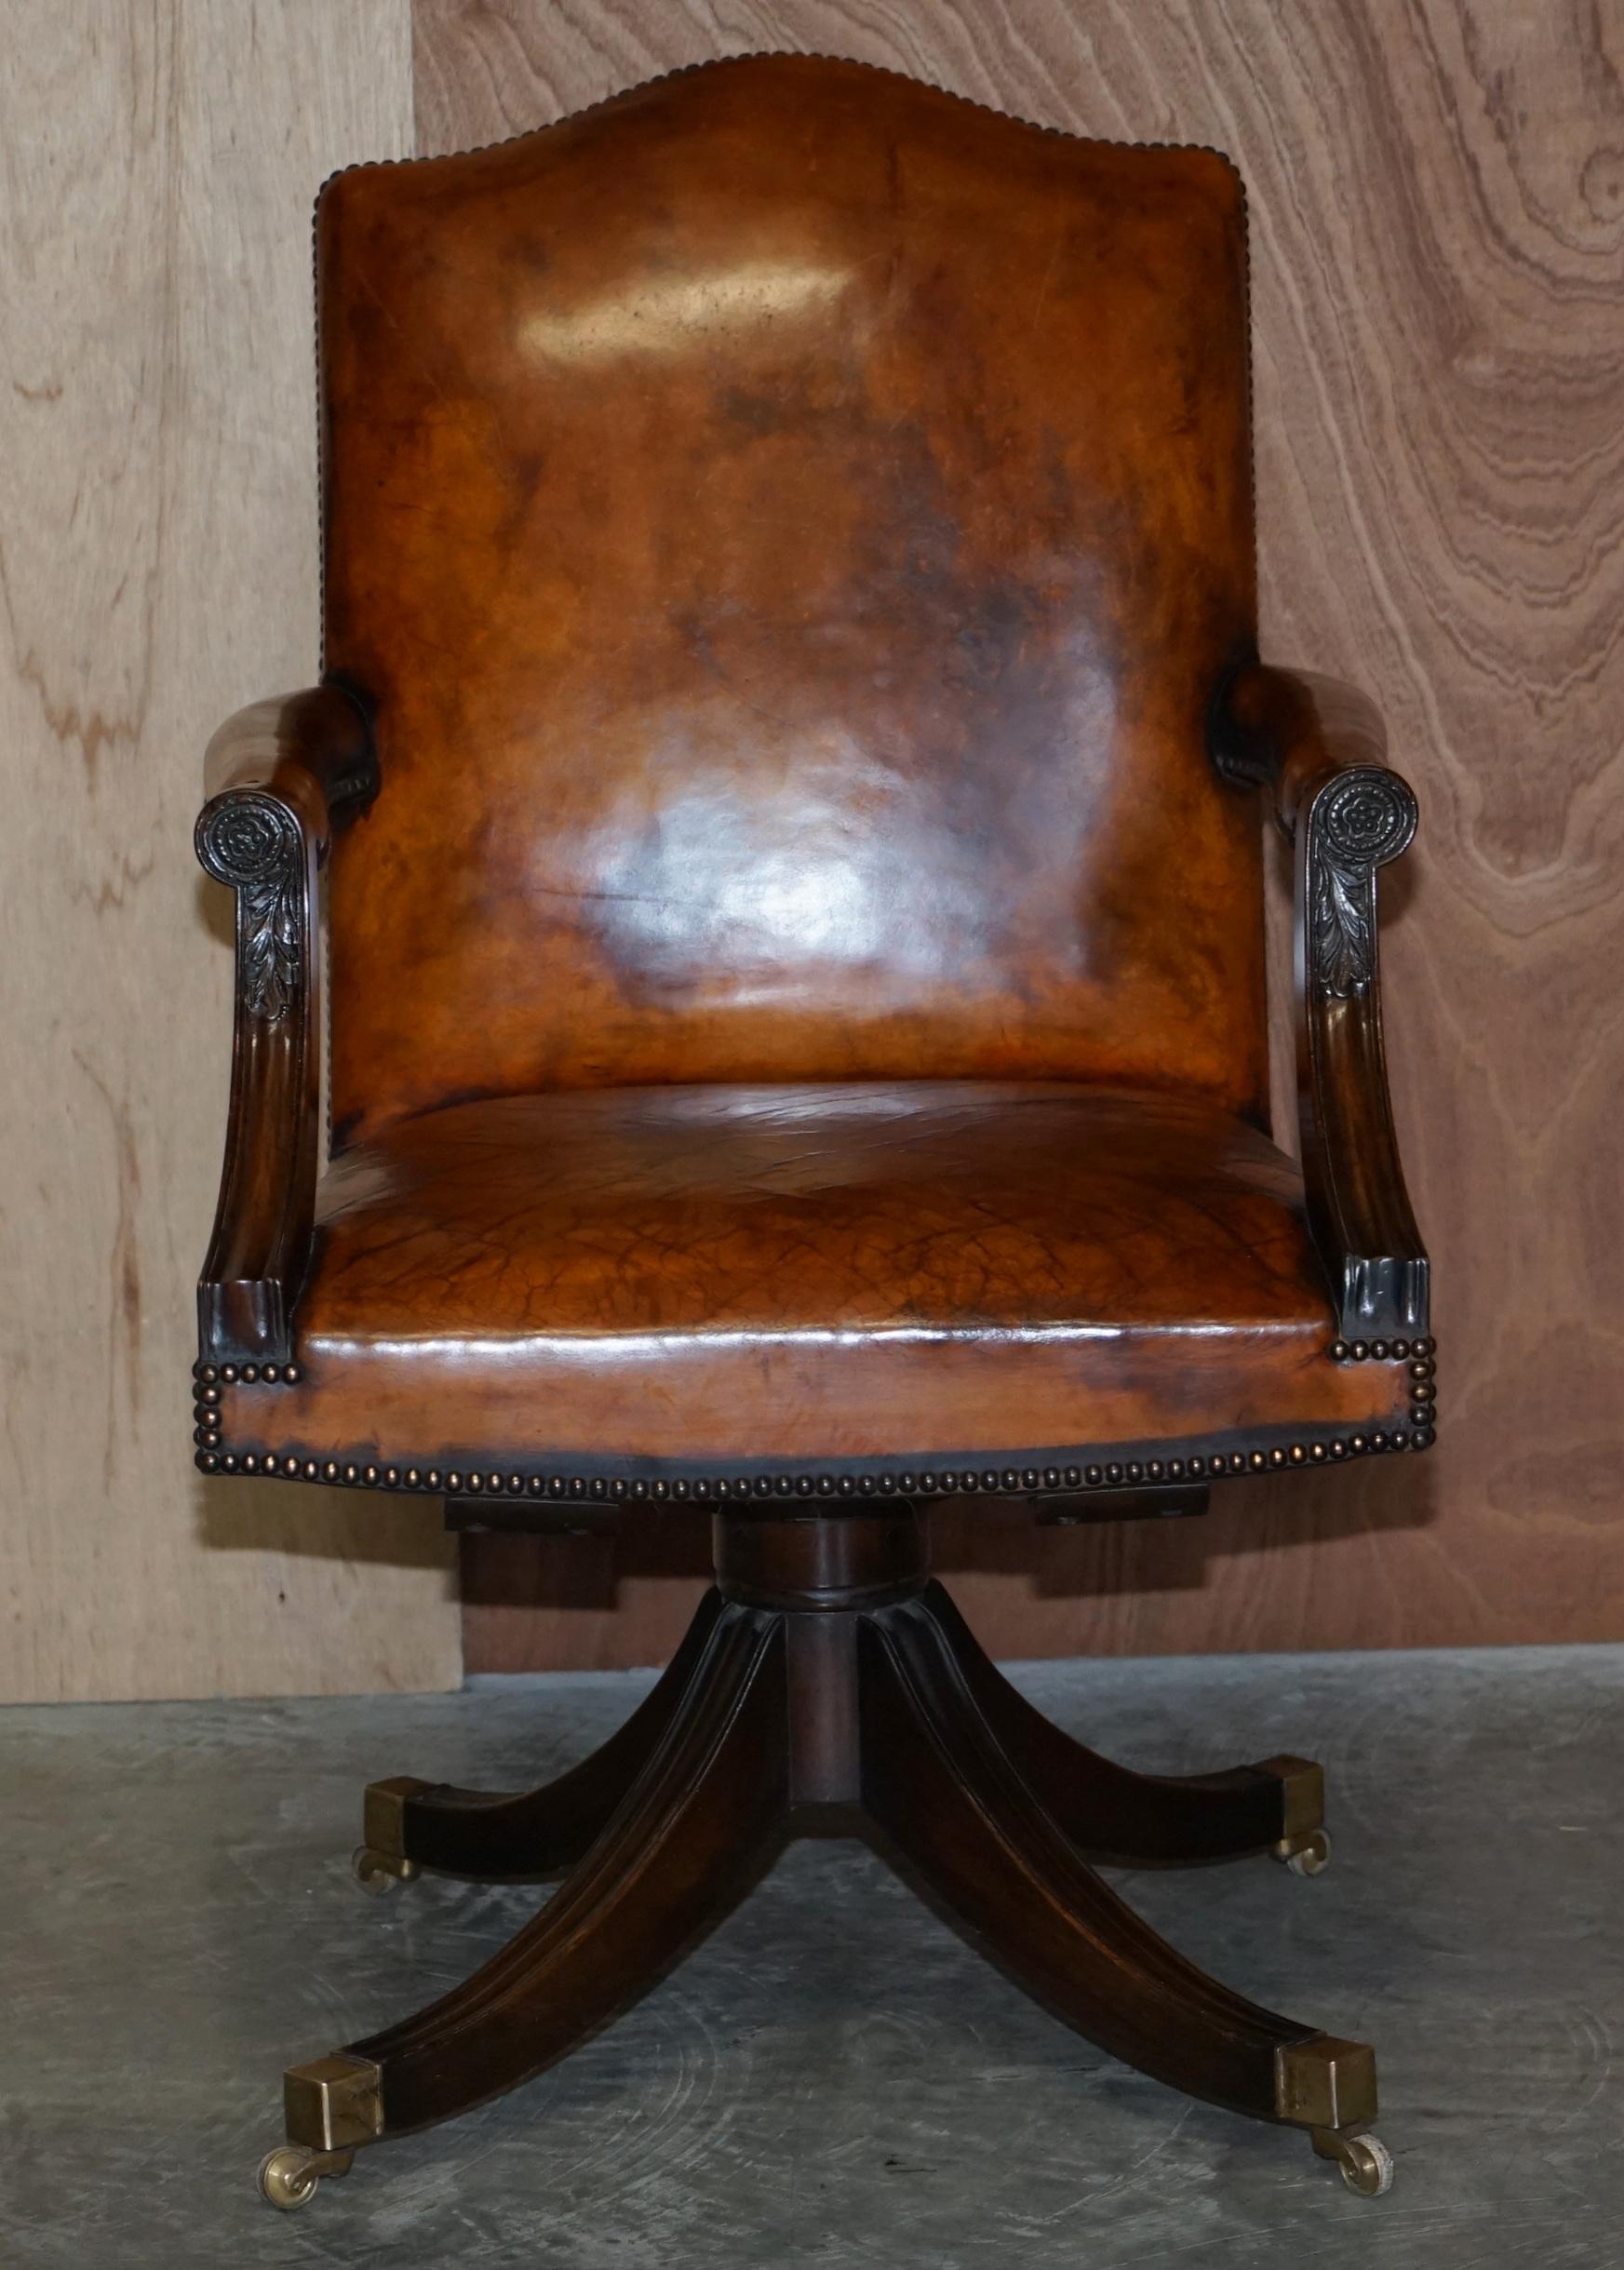 Nous sommes ravis d'offrir à la vente cette belle chaise de directeur en cuir brun cigare, entièrement restaurée et encadrée de chêne, teintée à la main.

Une très belle chaise de directeur, bien faite et confortable, je n'en ai pas vu une avec un